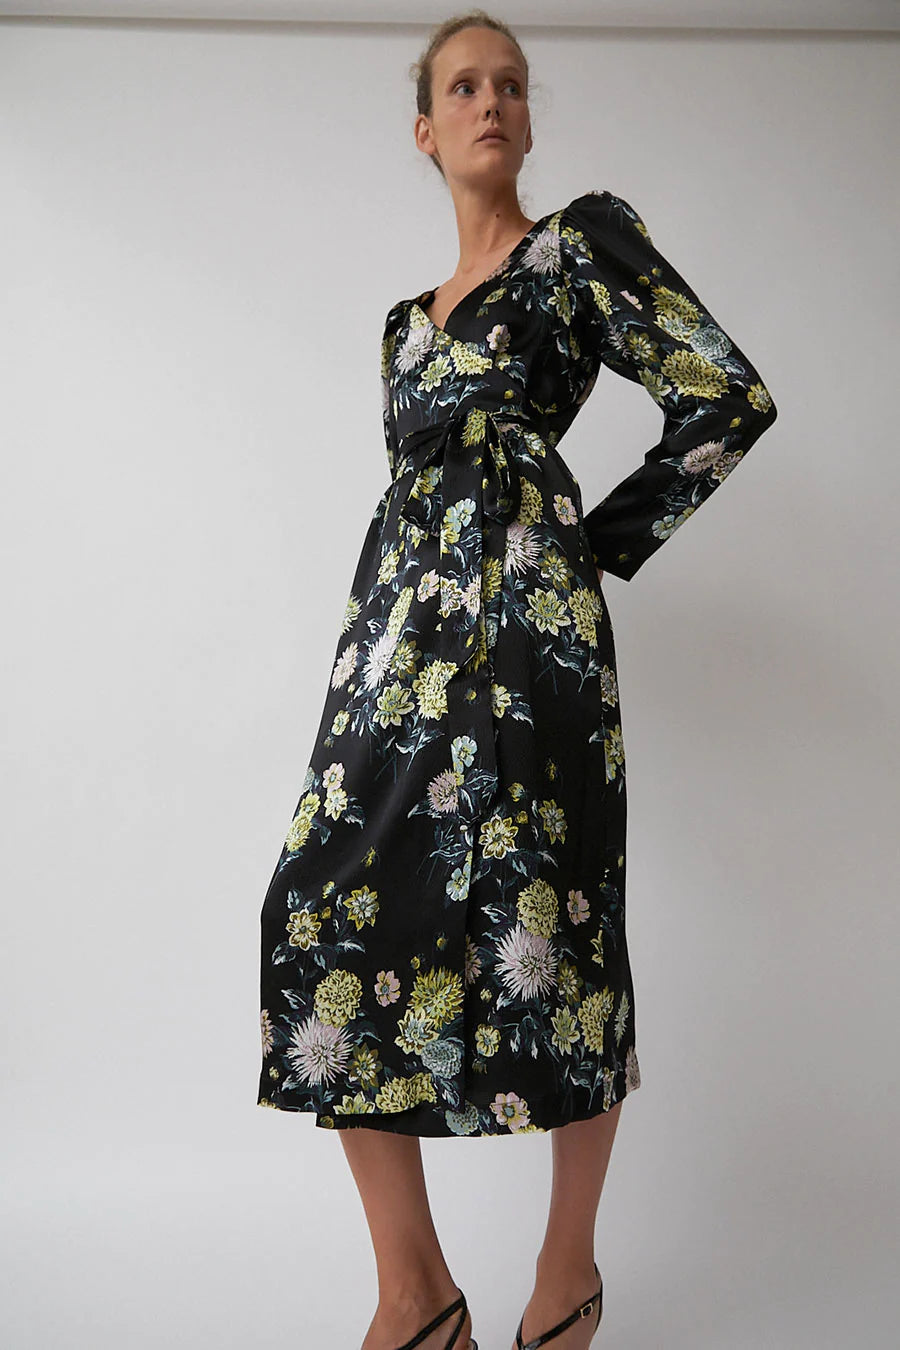 Franca Dress in Black Brighton Floral - No. 6